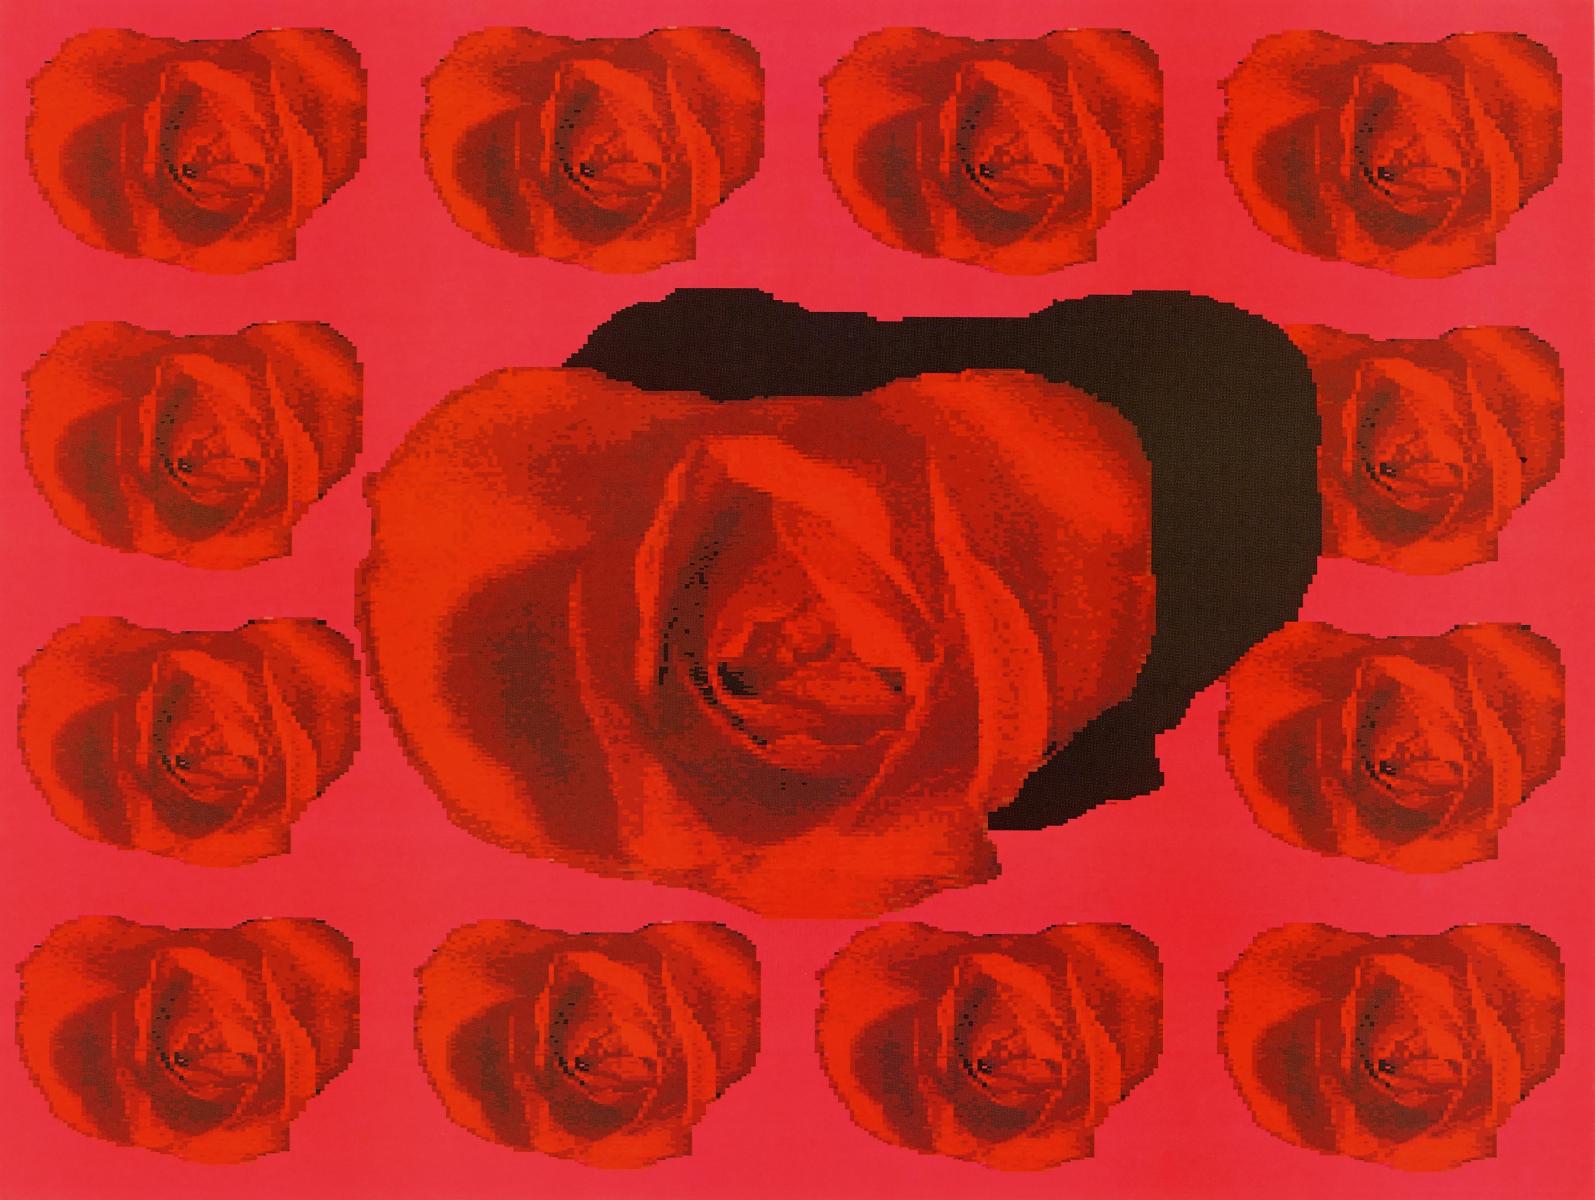 Eva Ruhland - Eine Rose ist keine Rose Rose, 57902-4307, Van Ham Kunstauktionen